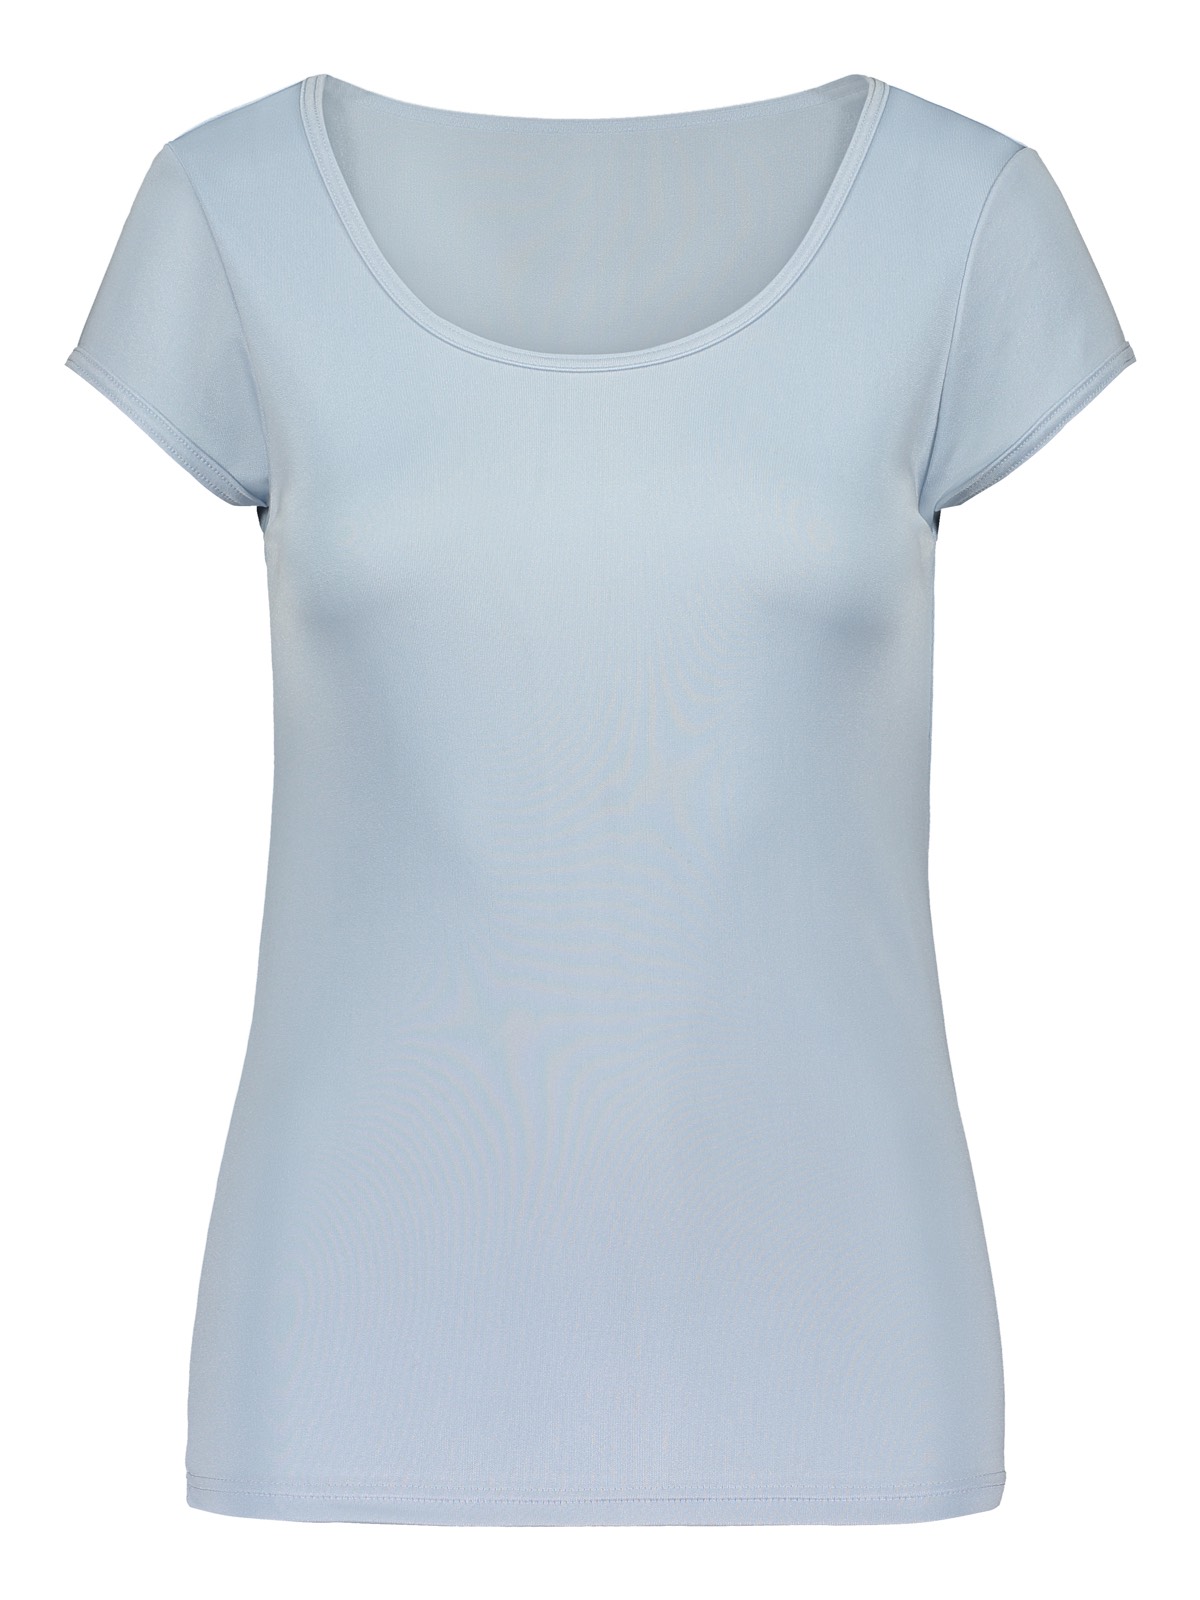 Women's short-sleeved top, silk